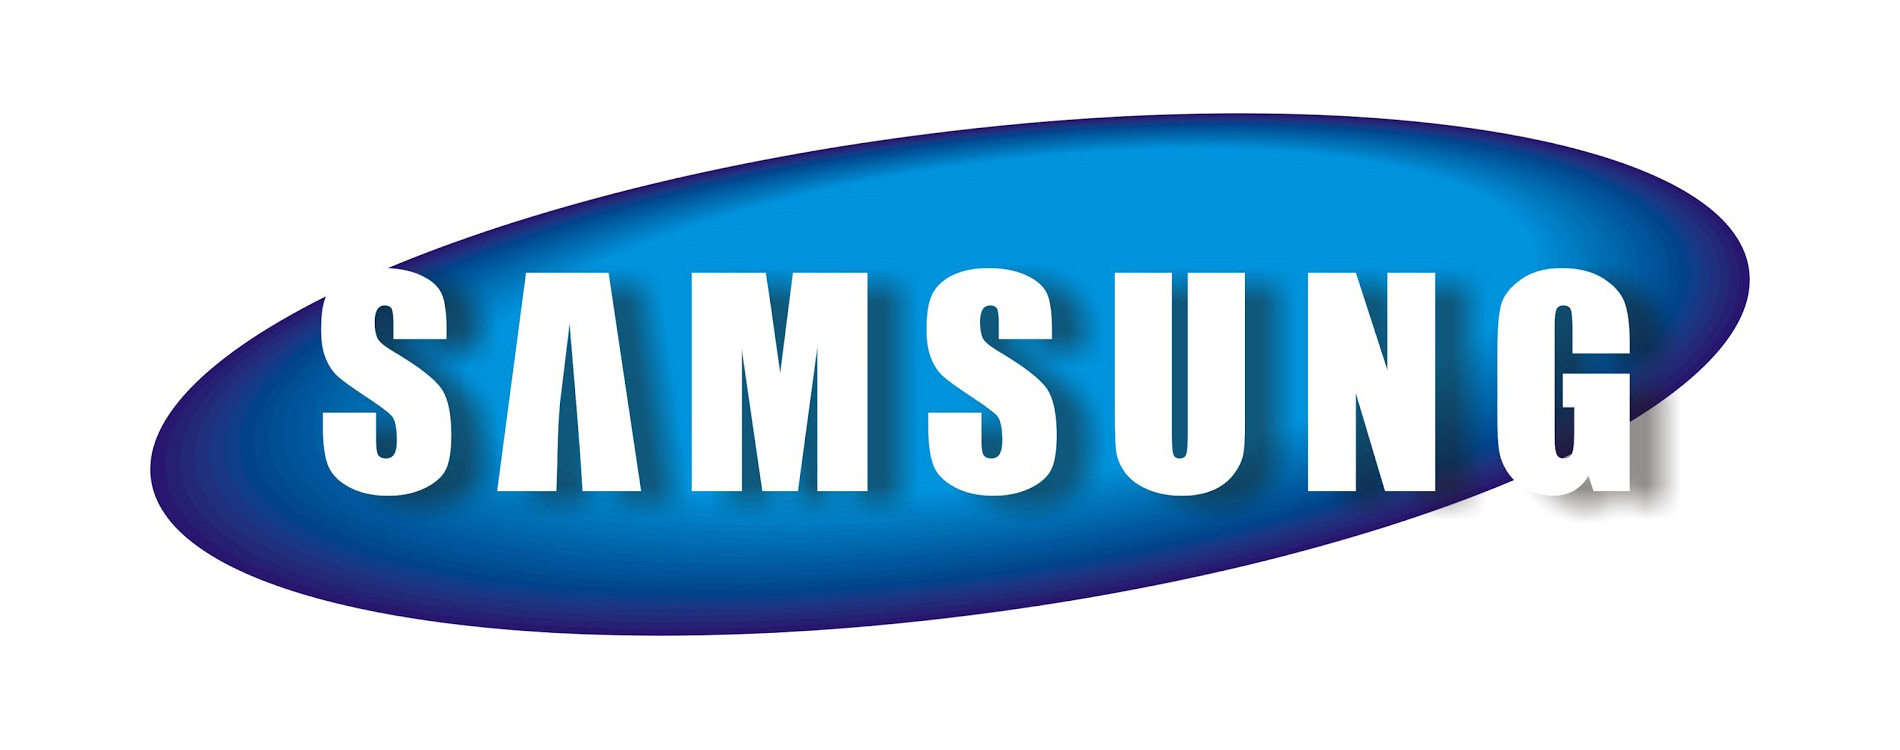 Trwaj prace nad oprogramowaniem dla Samsung Galaxy S11